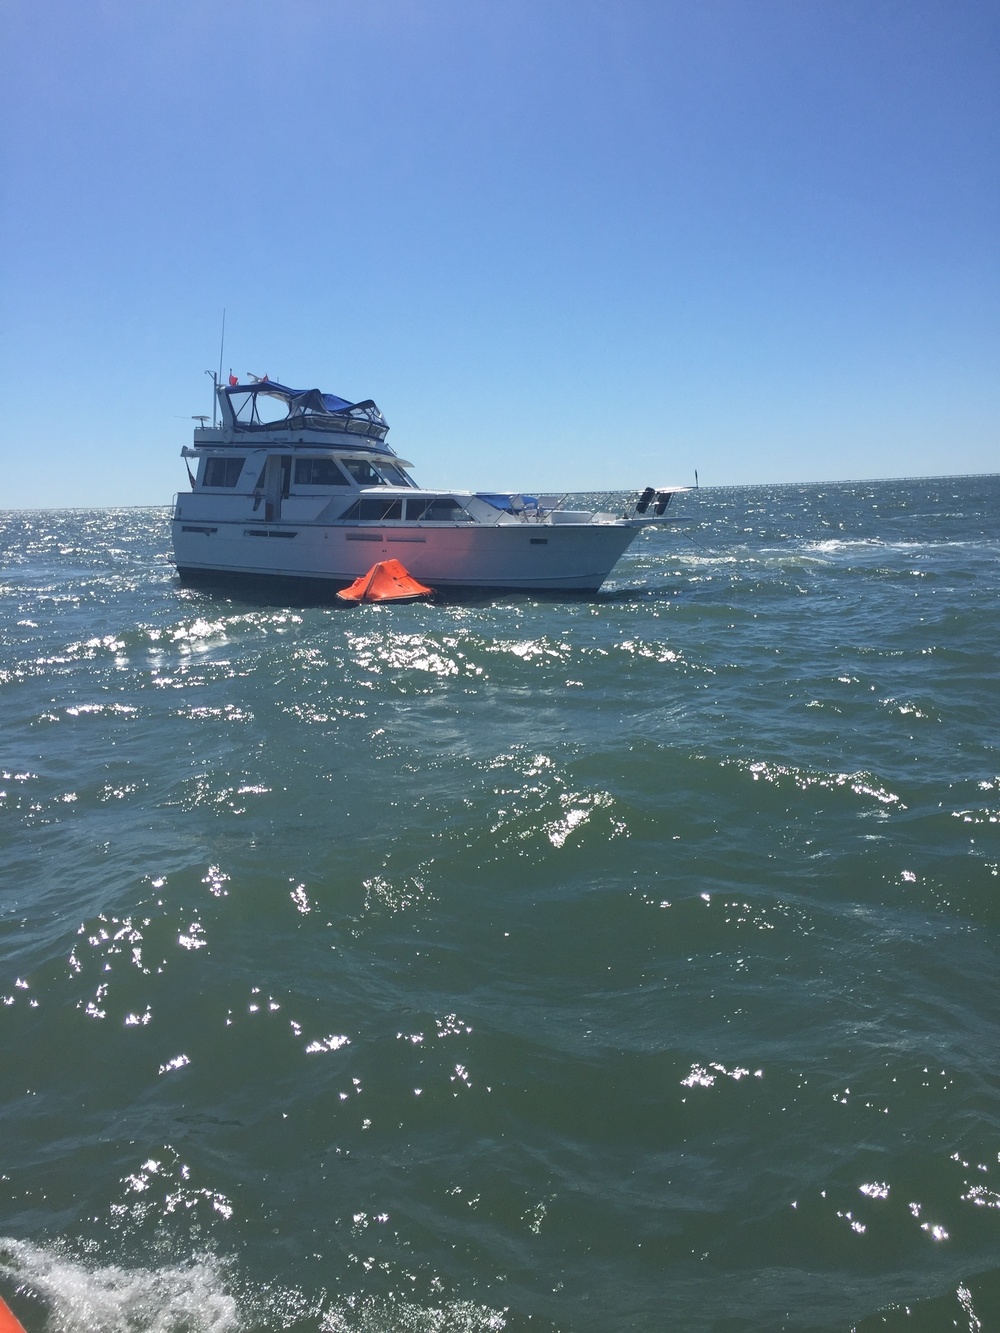 Coast Guard hoists boaters from yacht fire Friday near Fisherman's Island, VA